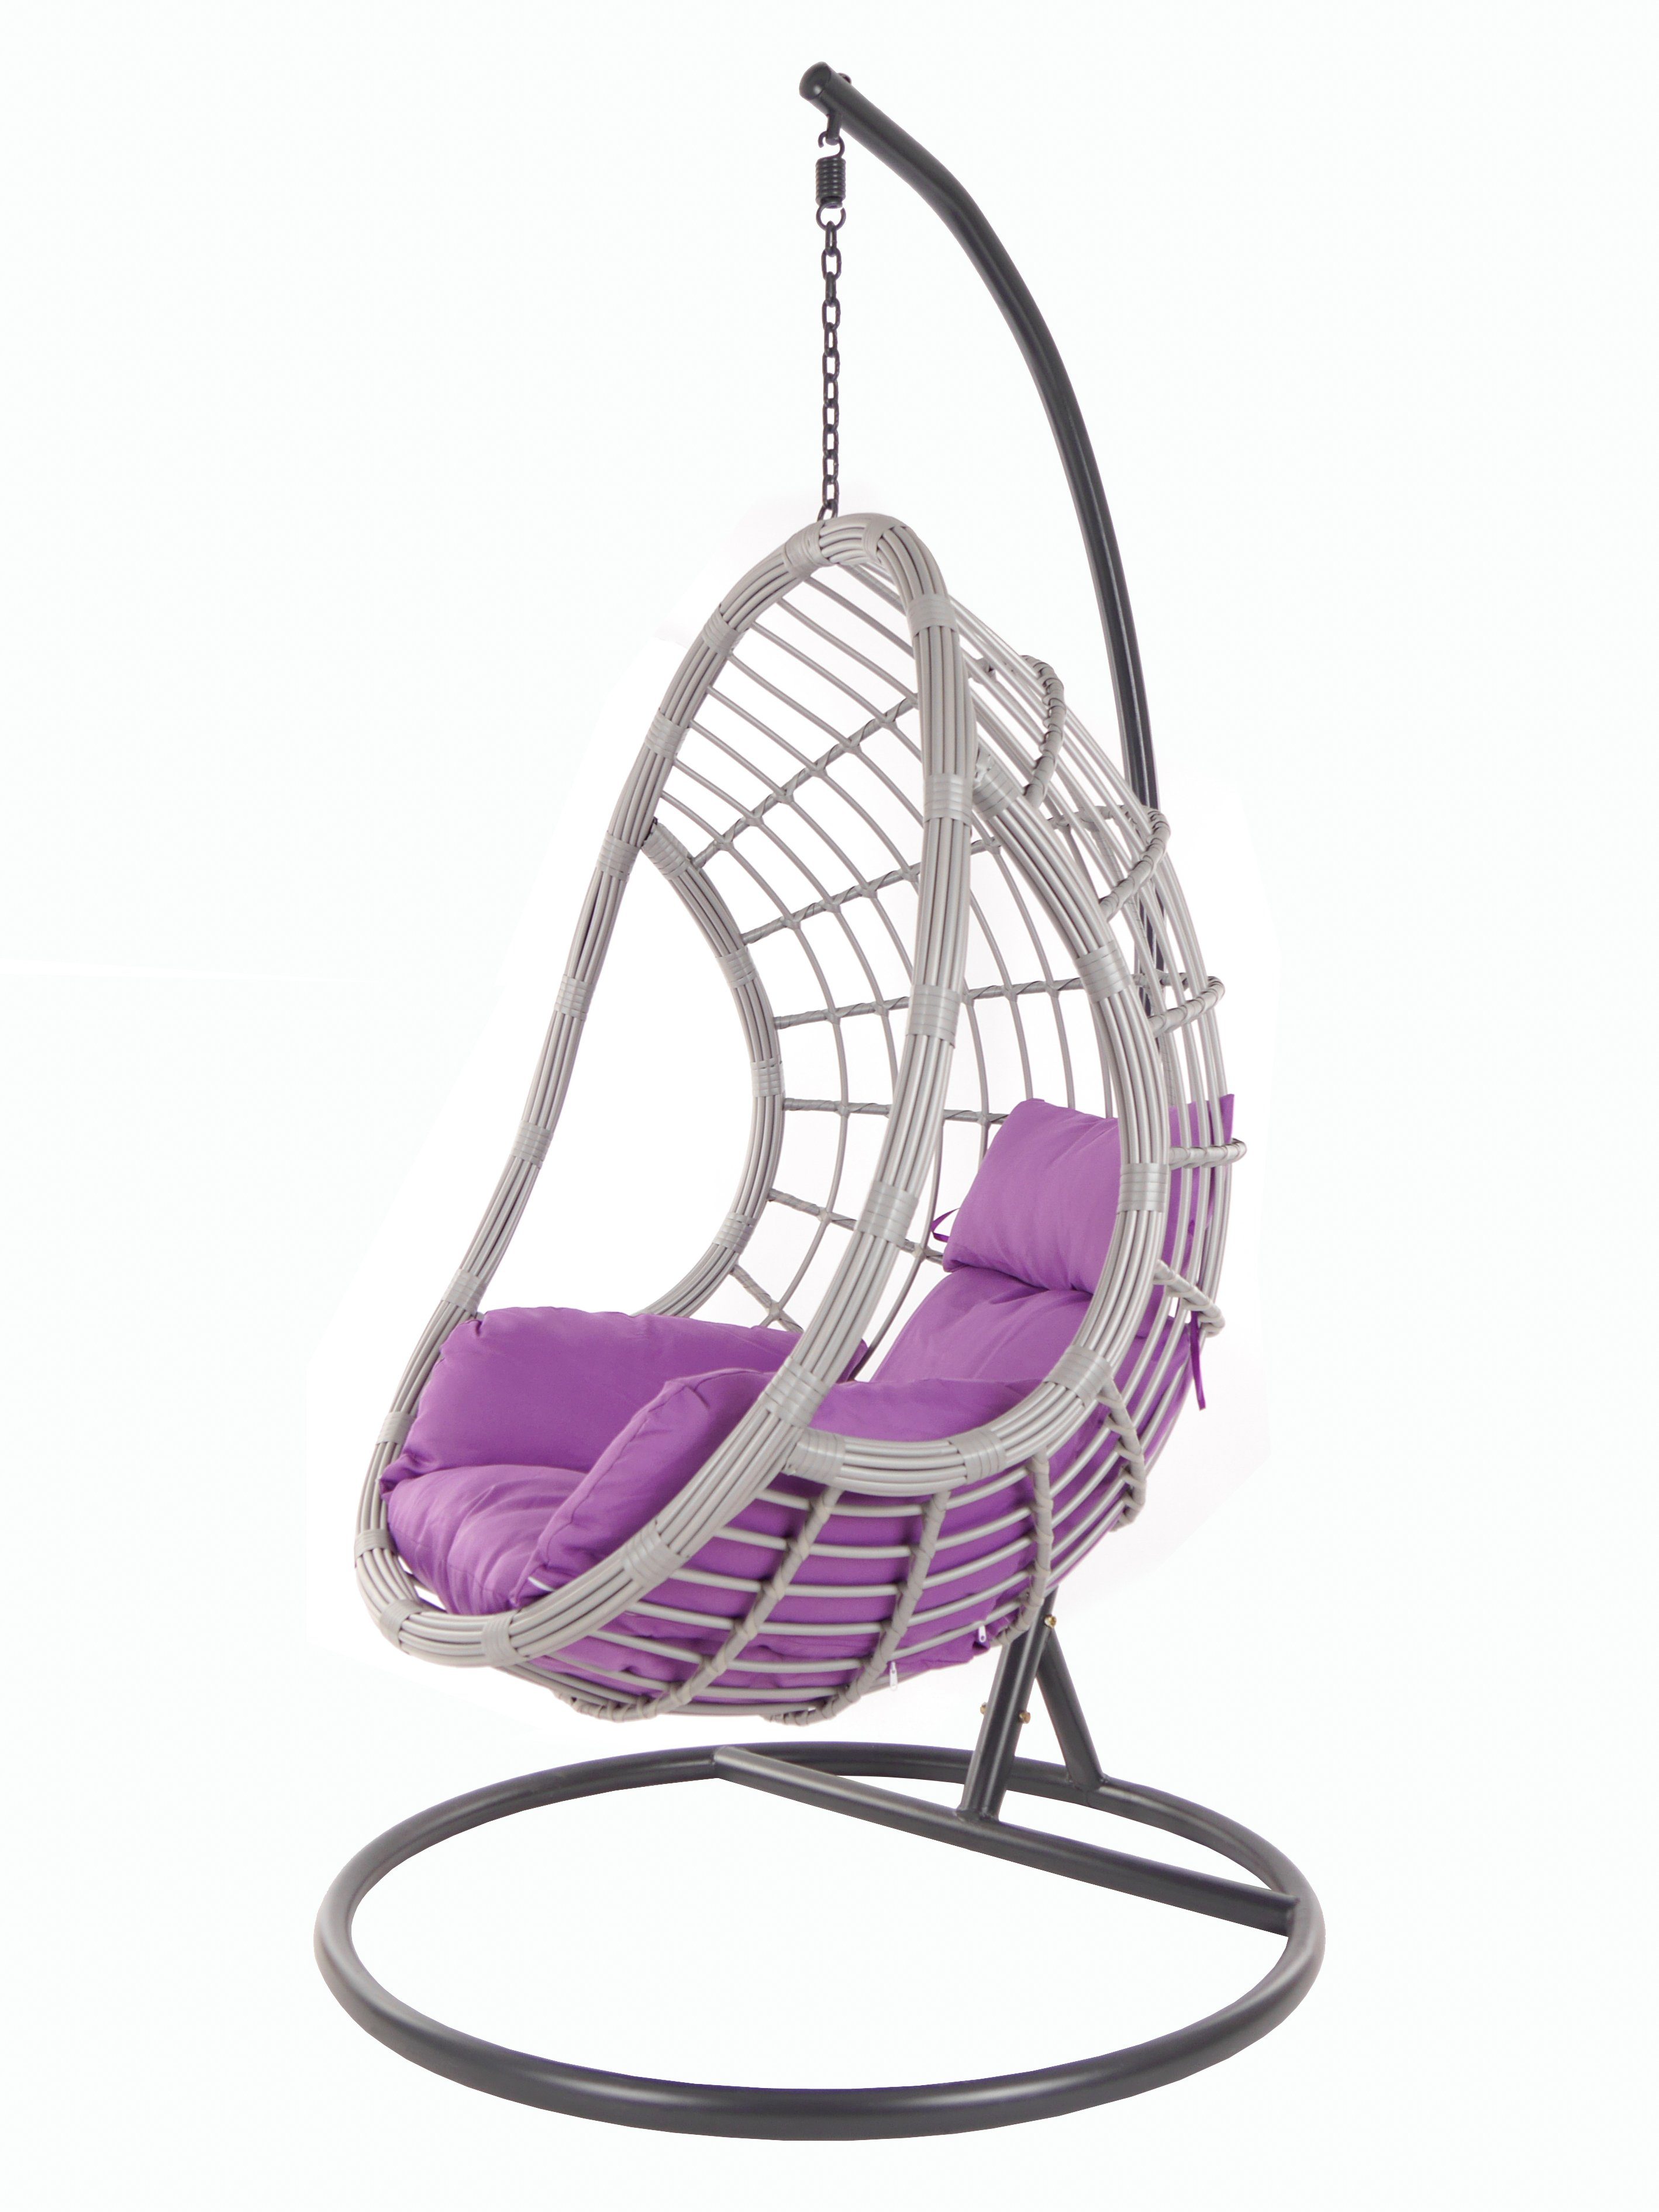 Gestell (4050 Loungemöbel lila mit und Hängesessel Swing KIDEO lightgrey, Chair, PALMANOVA Kissen, violet) Schwebesessel